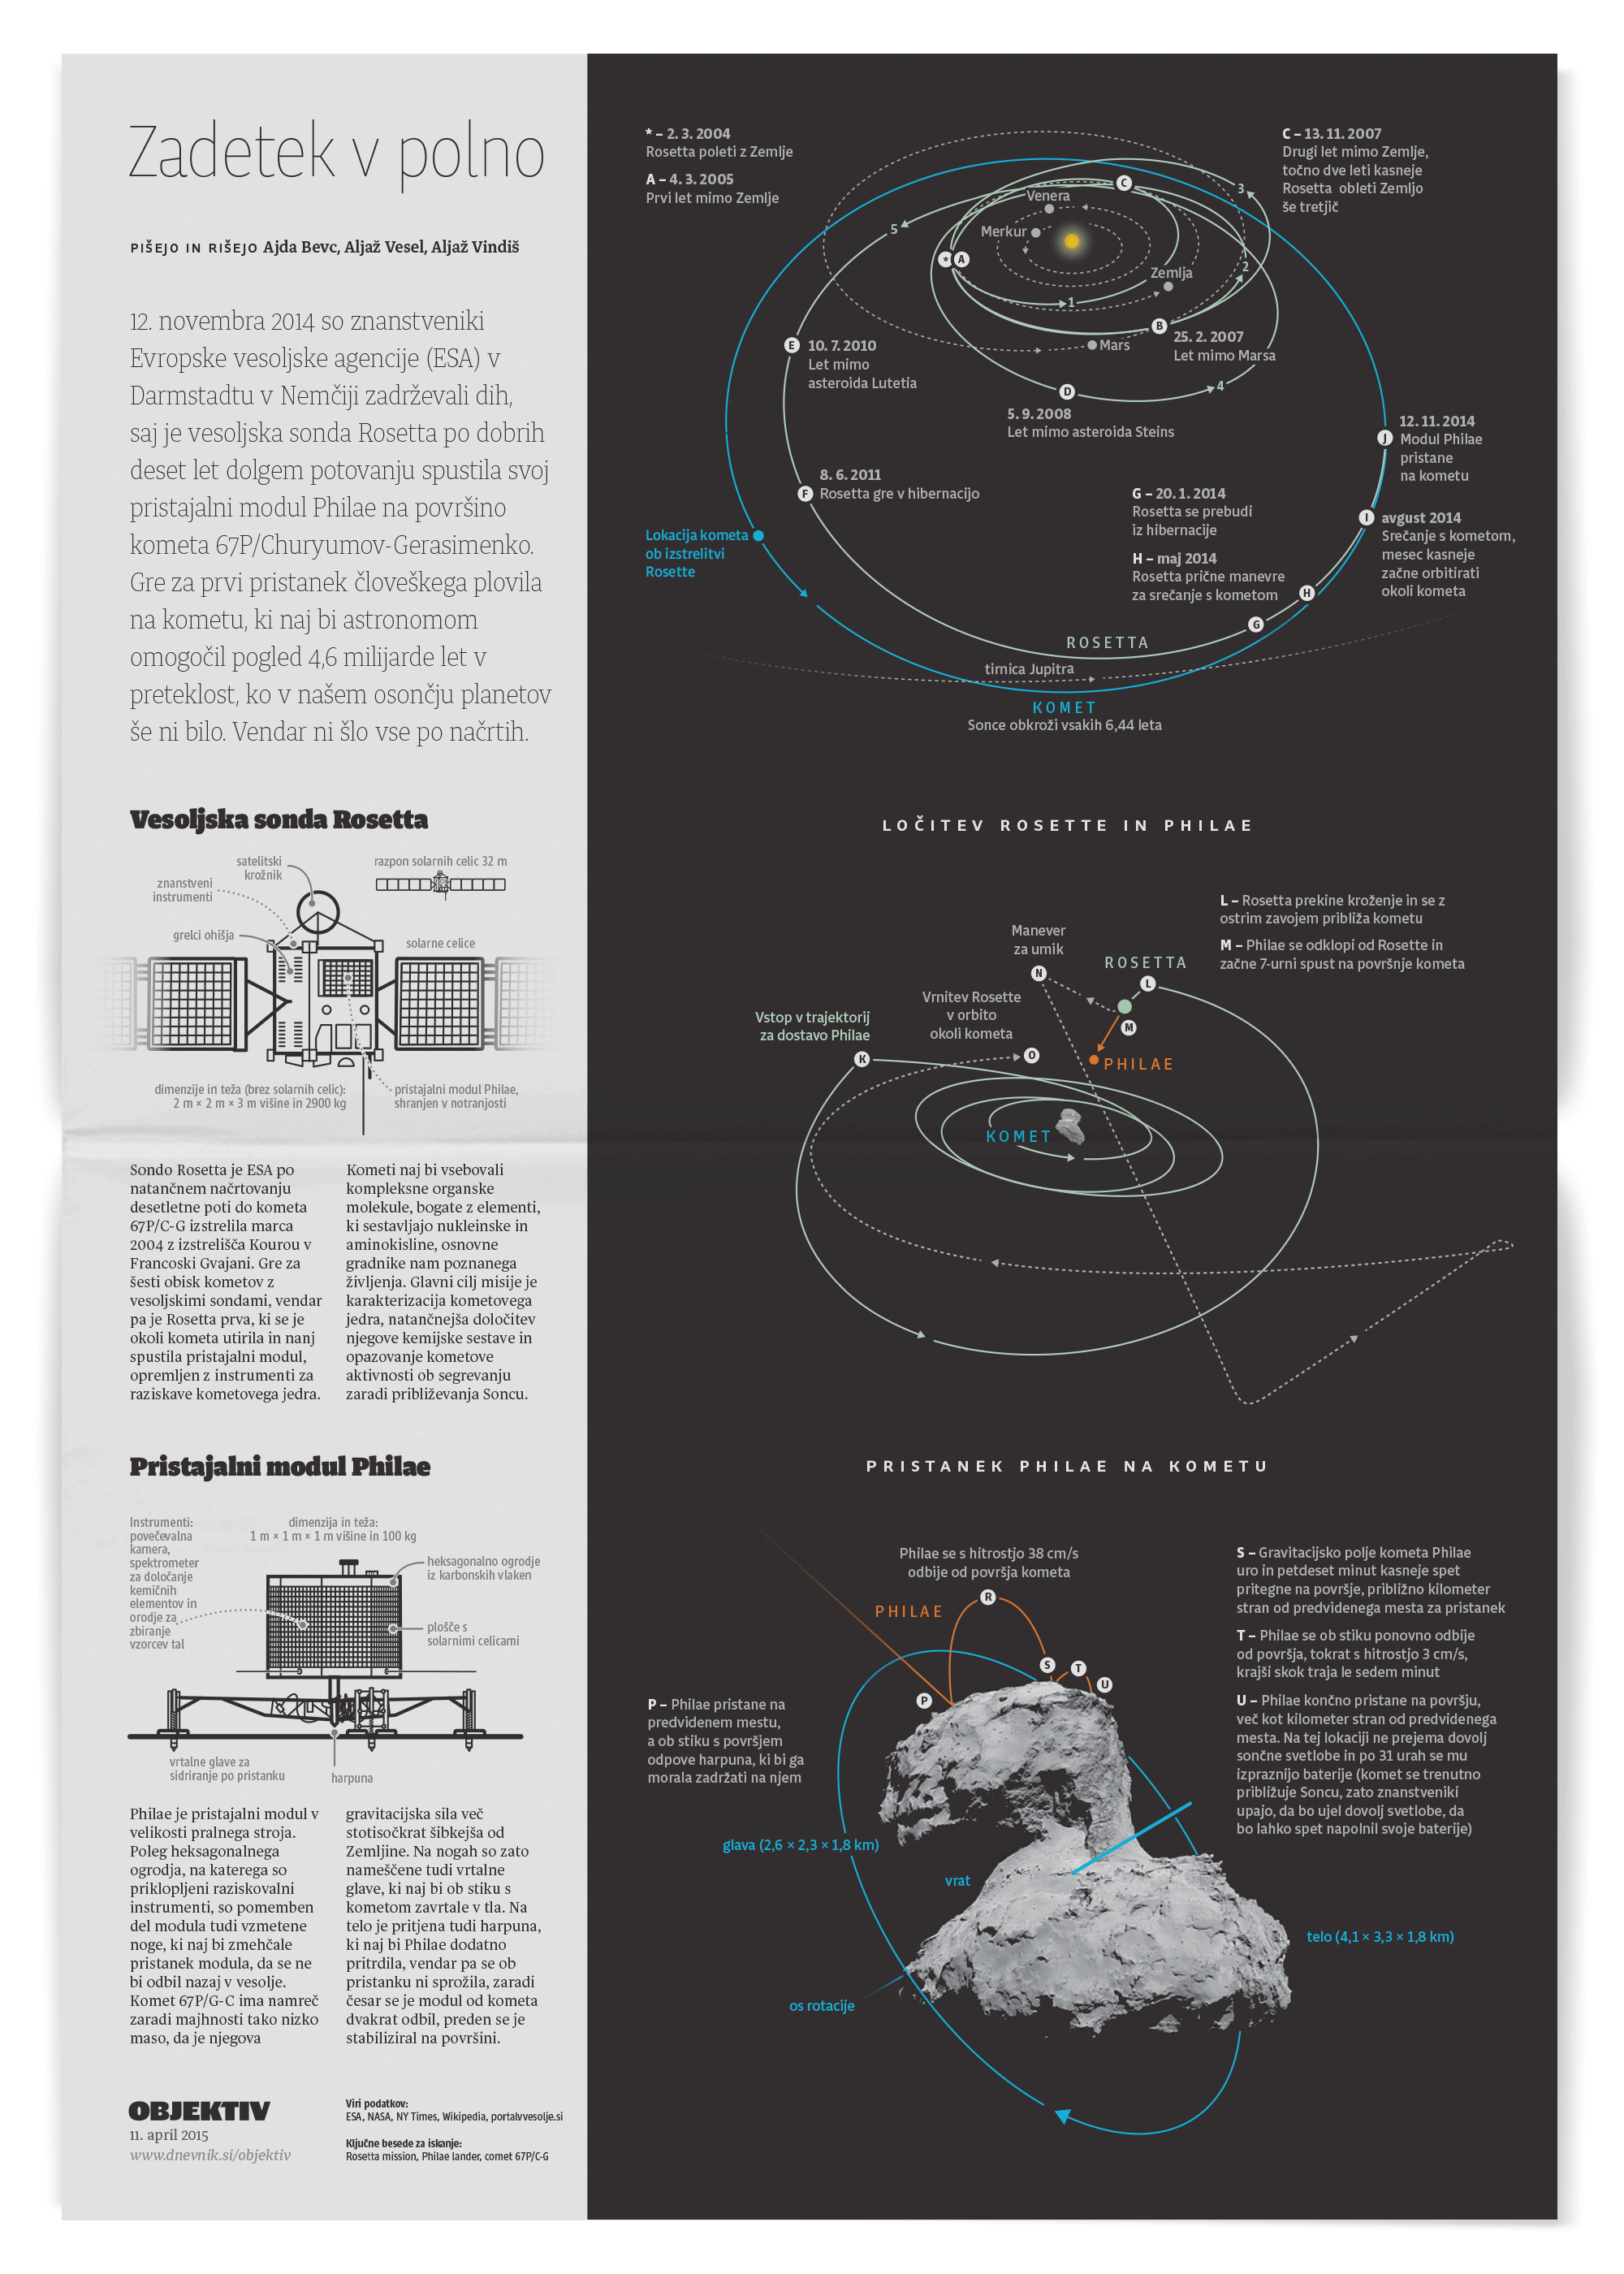 Illustration of Rosetta mission landing.